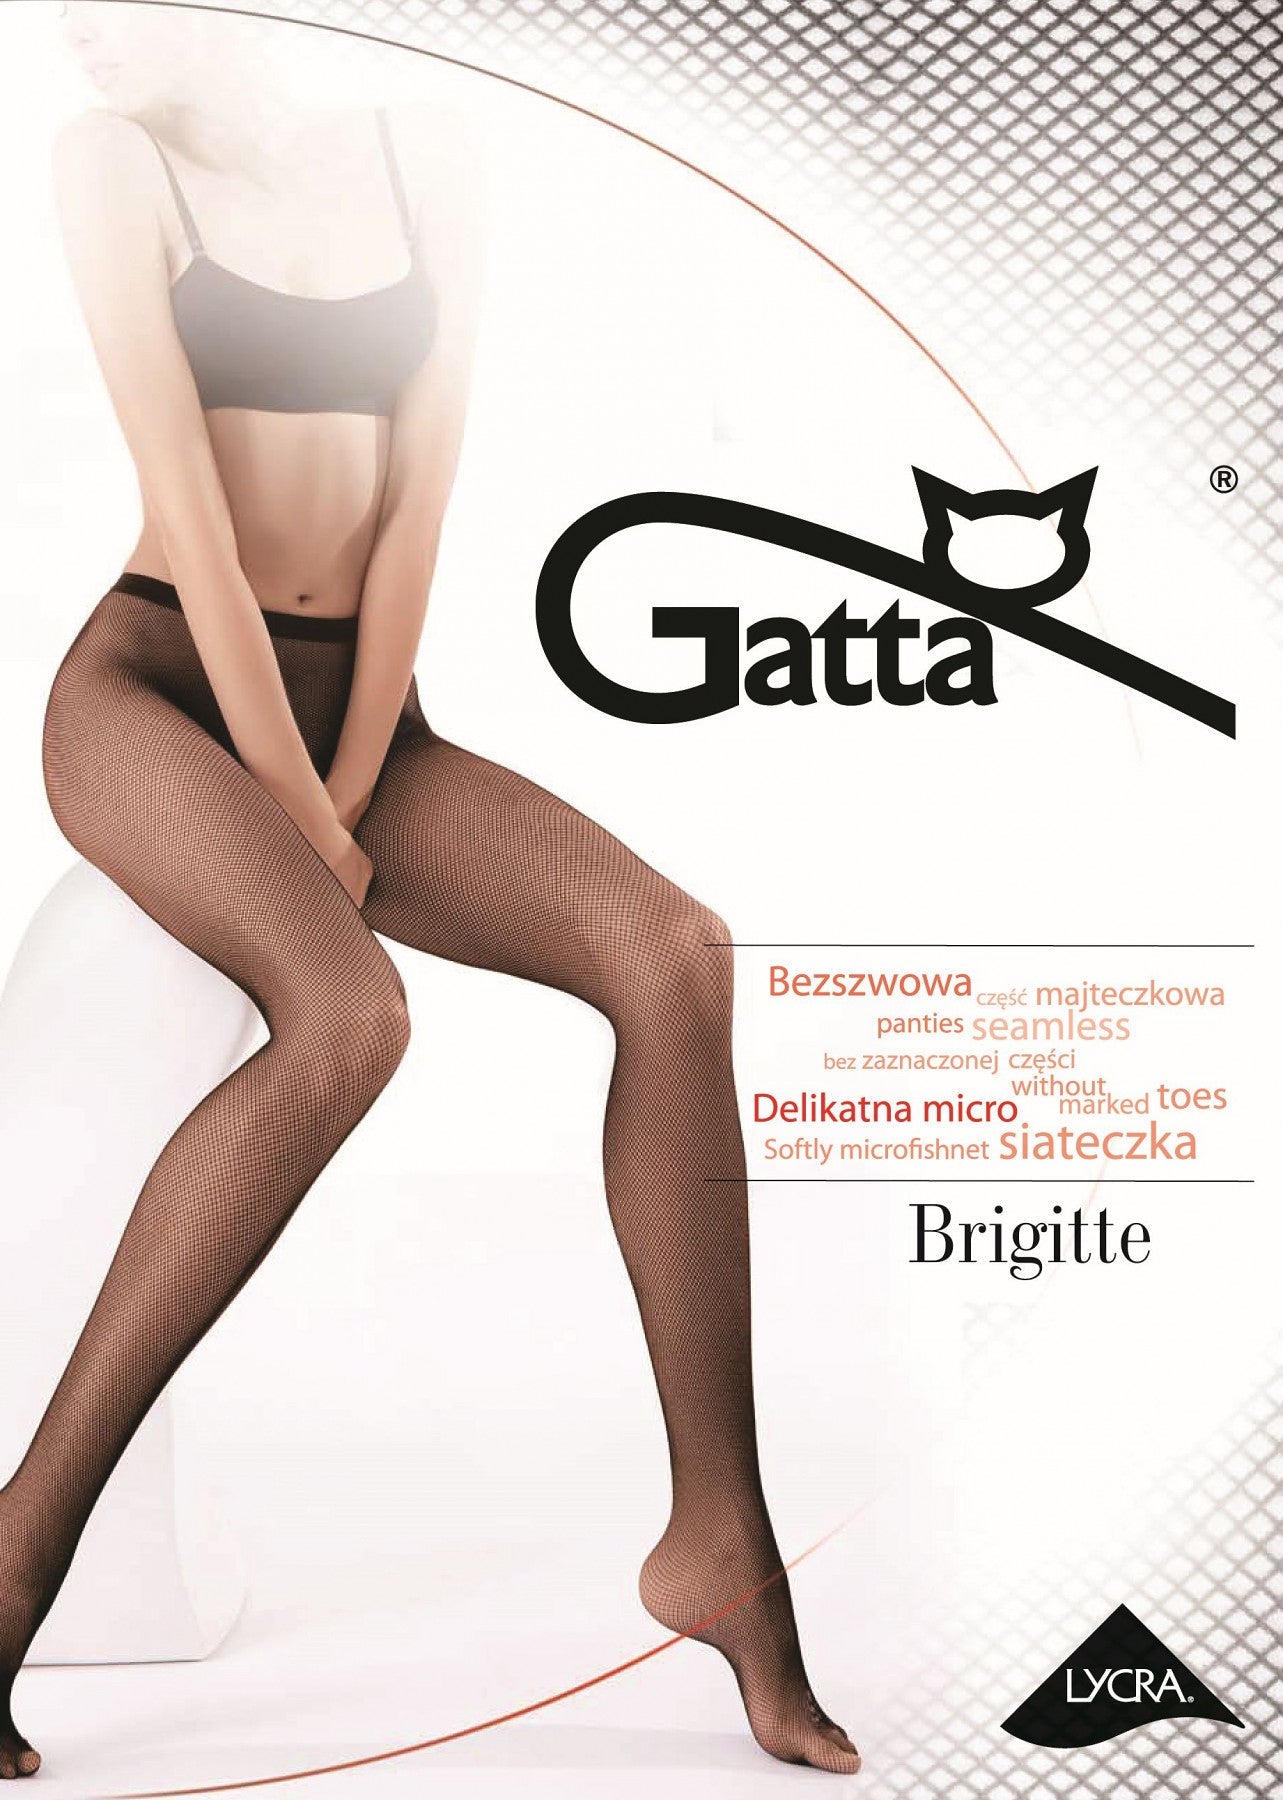 Seamless fishnet tights Gatta Brigitte 06 - small fishnet - black